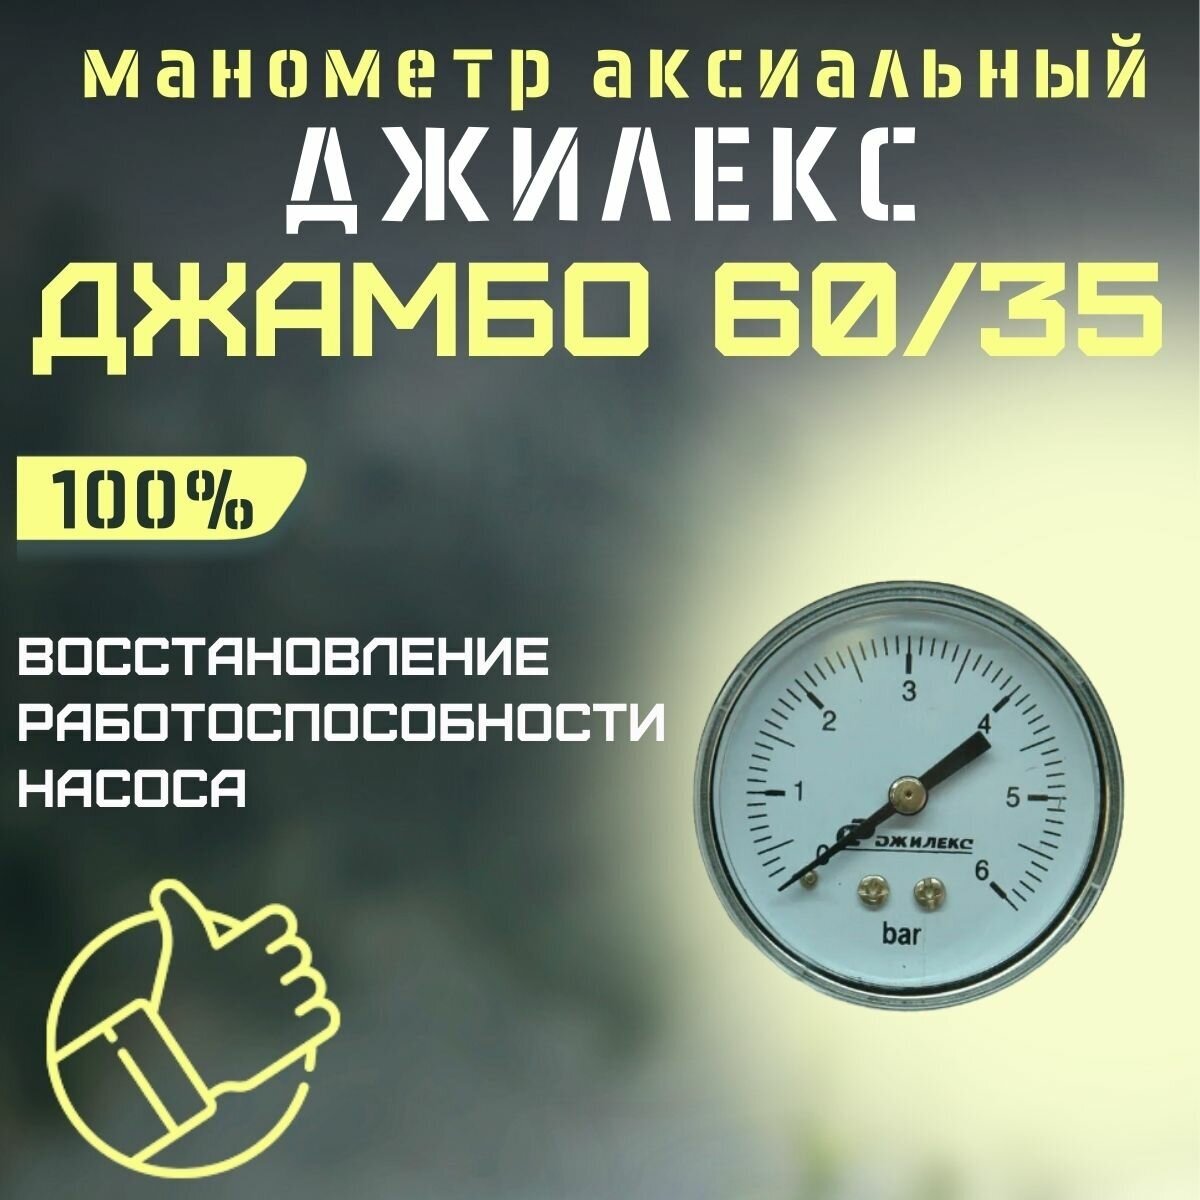 Джилекс манометр аксиальный Джамбо 60/35 (manom6035)